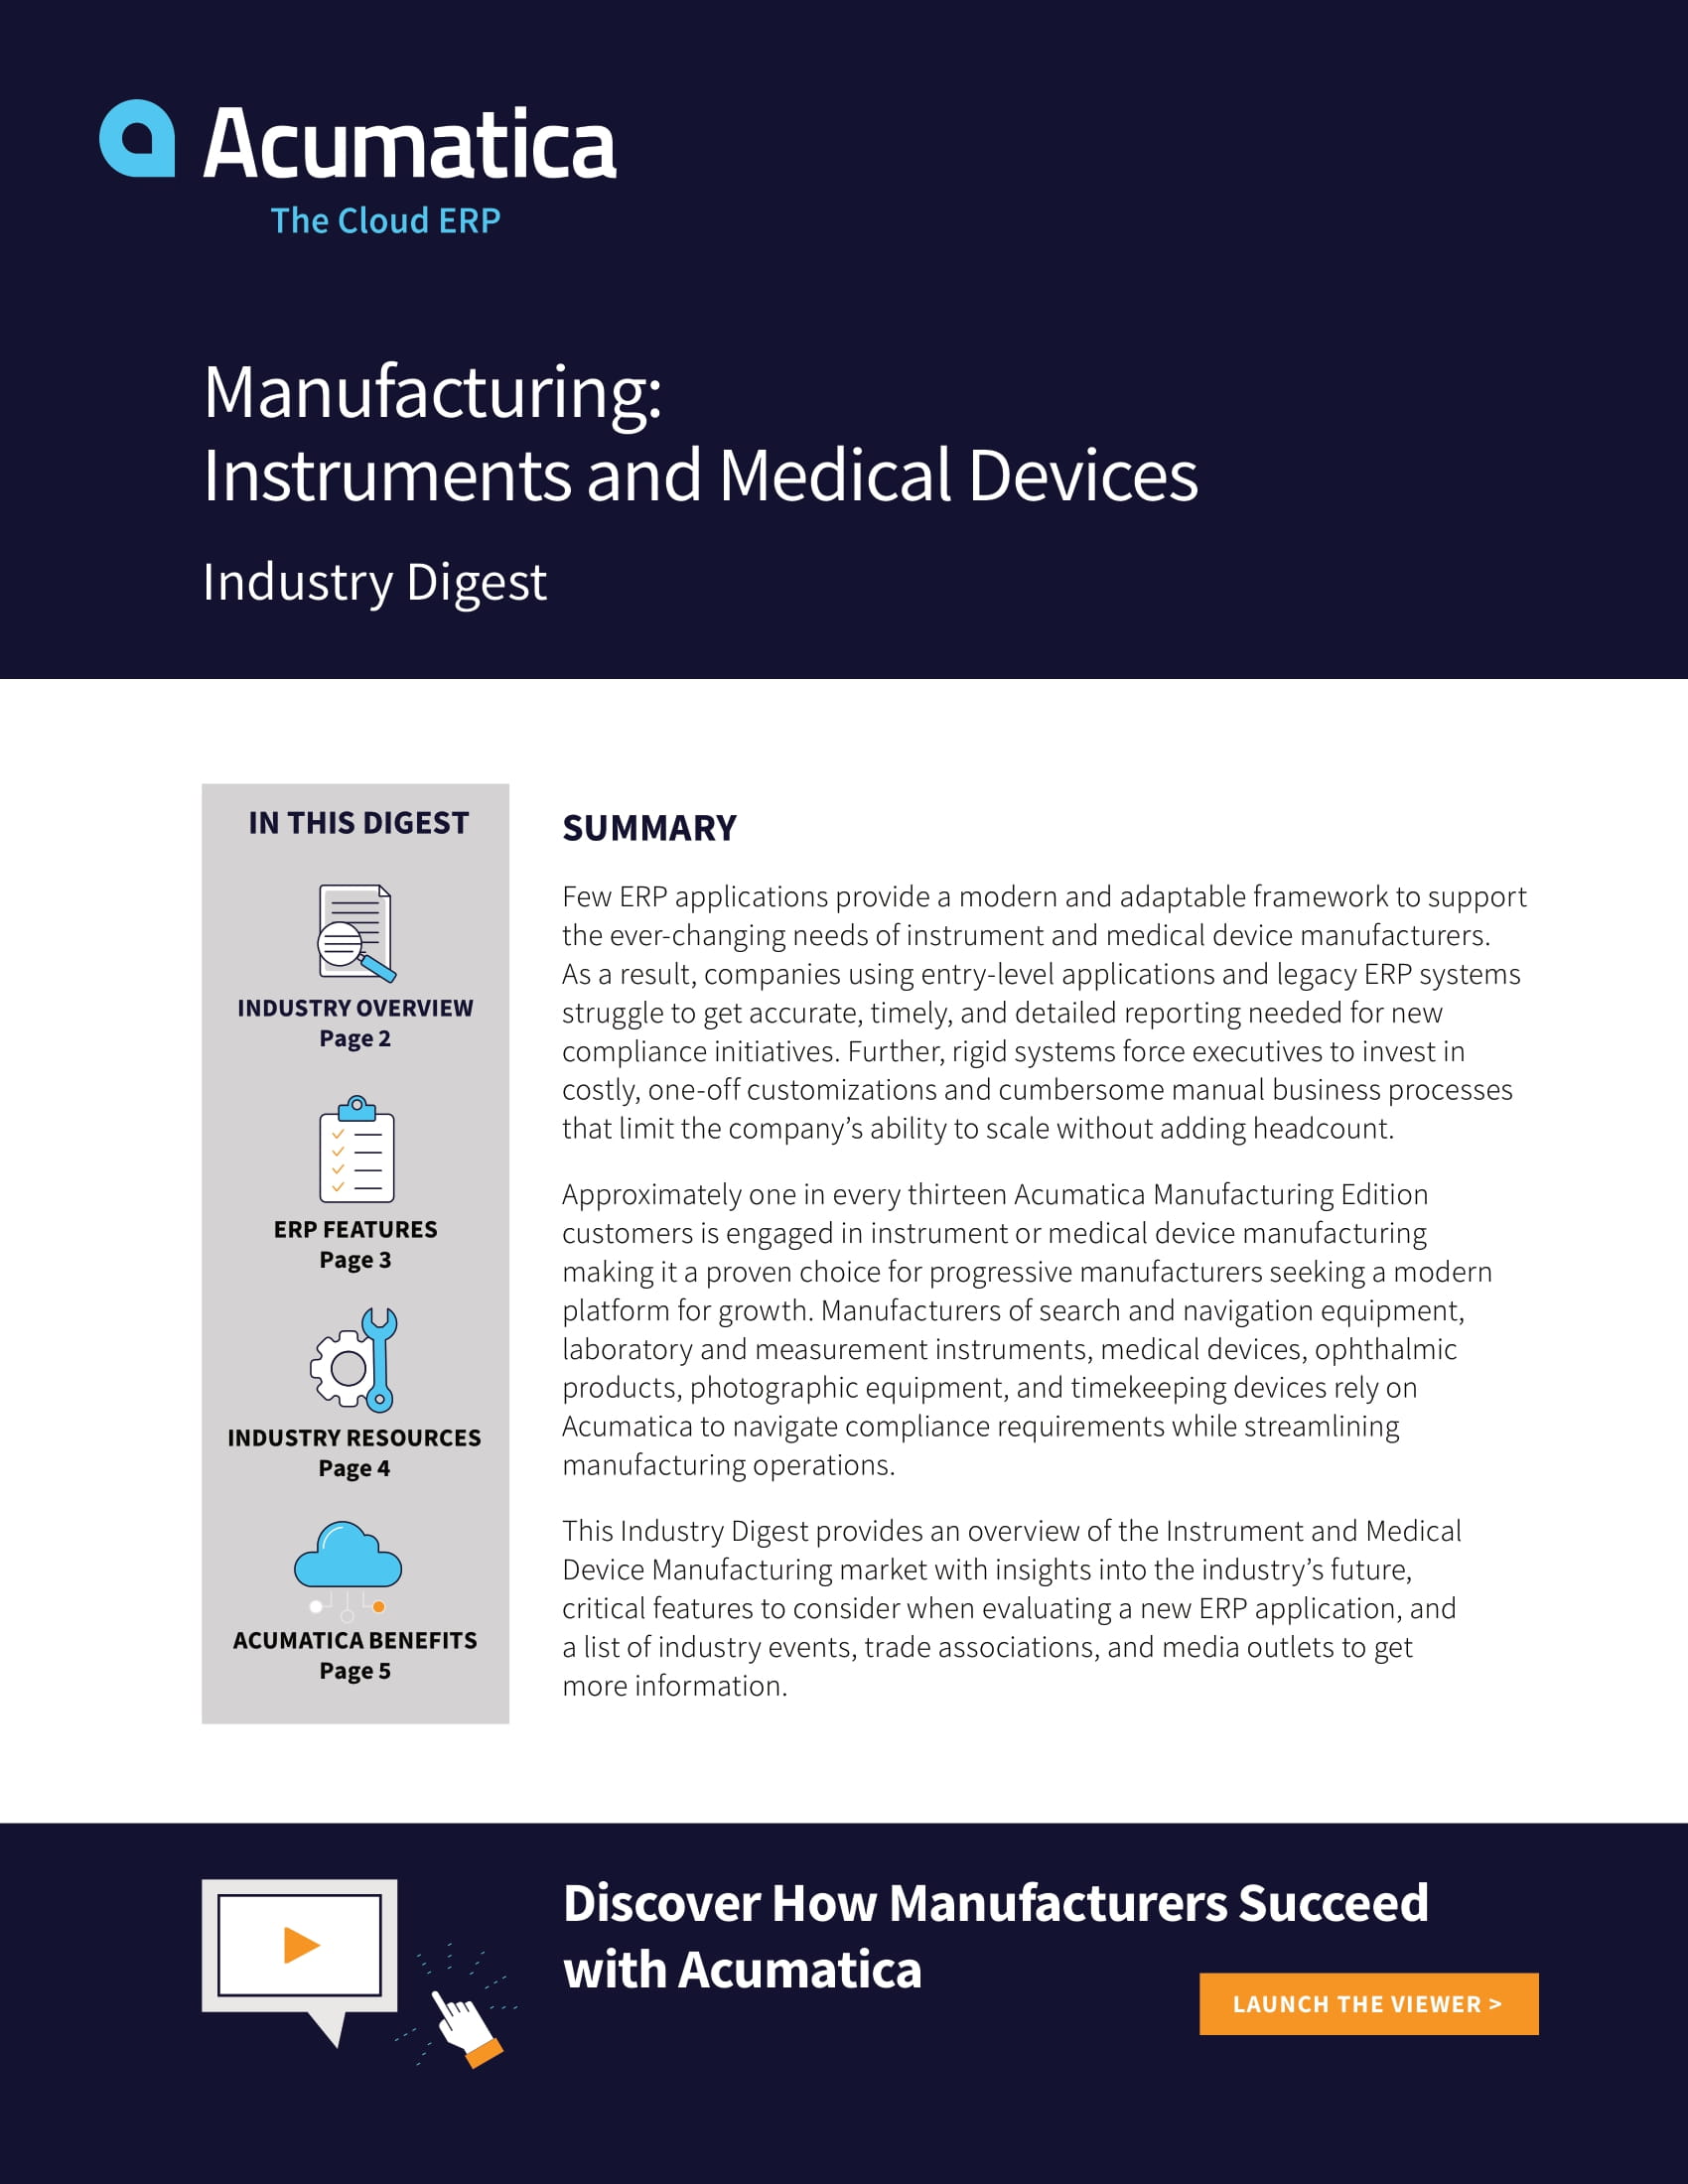 Pourquoi les fabricants d'instruments et de dispositifs médicaux ont-ils besoin d'une solution ERP moderne ?